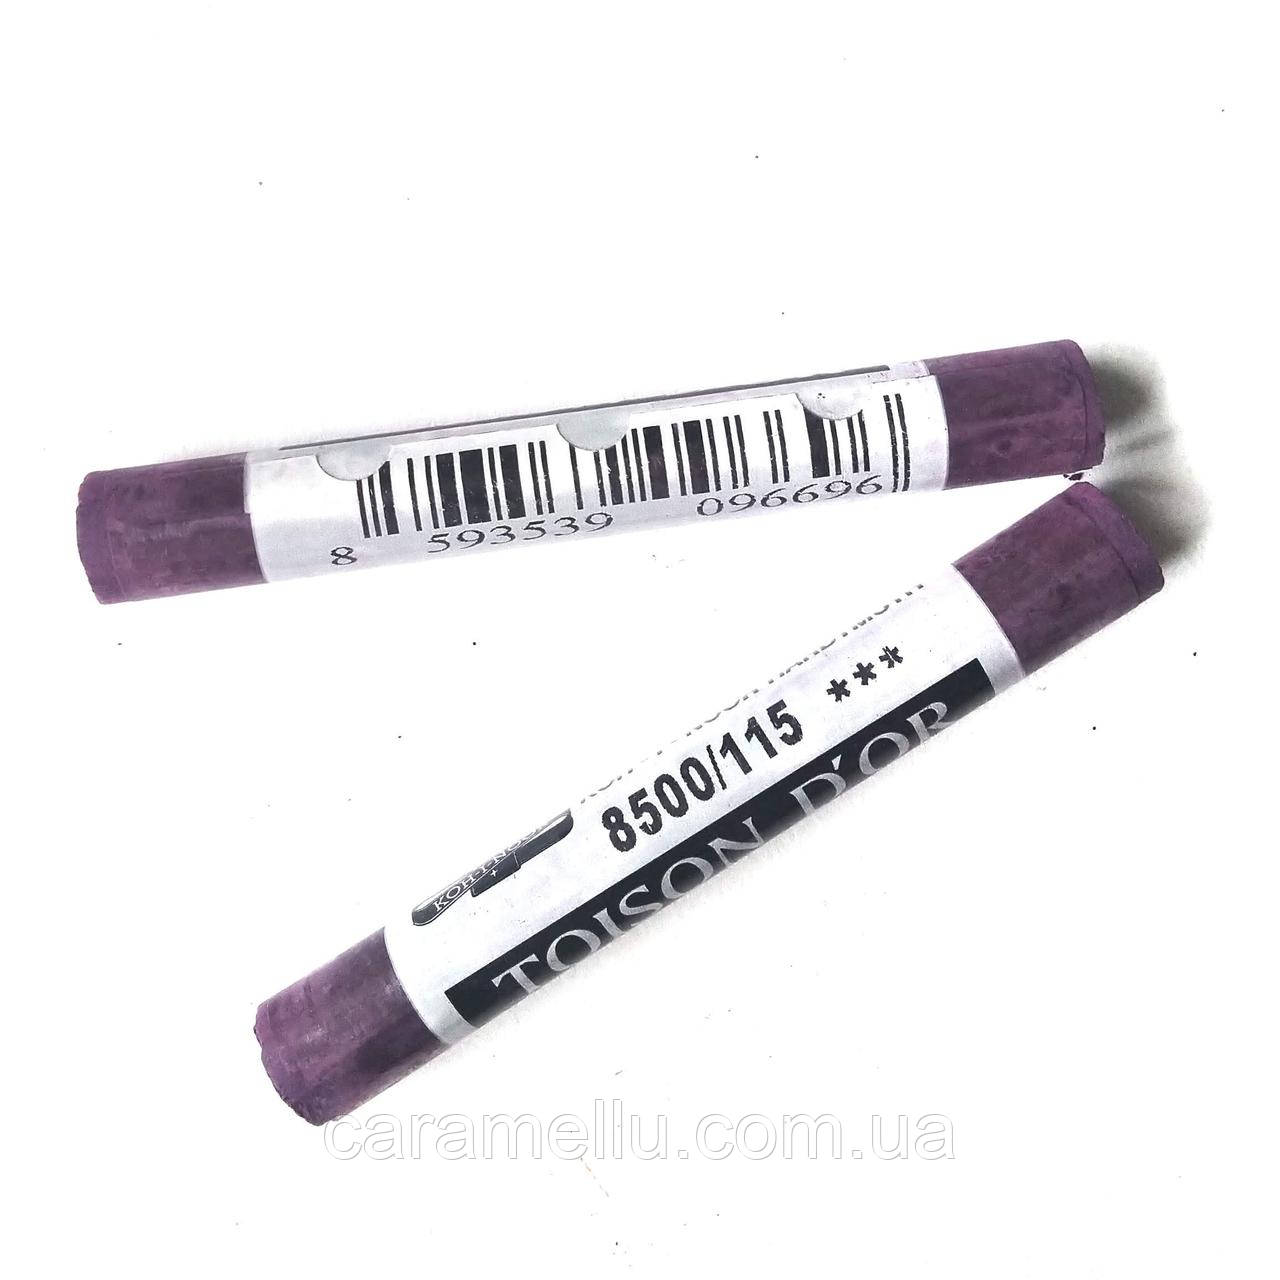 Пастель сухая. №115 Фиолетово-пурпурный темный. Koh-i-noor Toison D'Nor 8500.